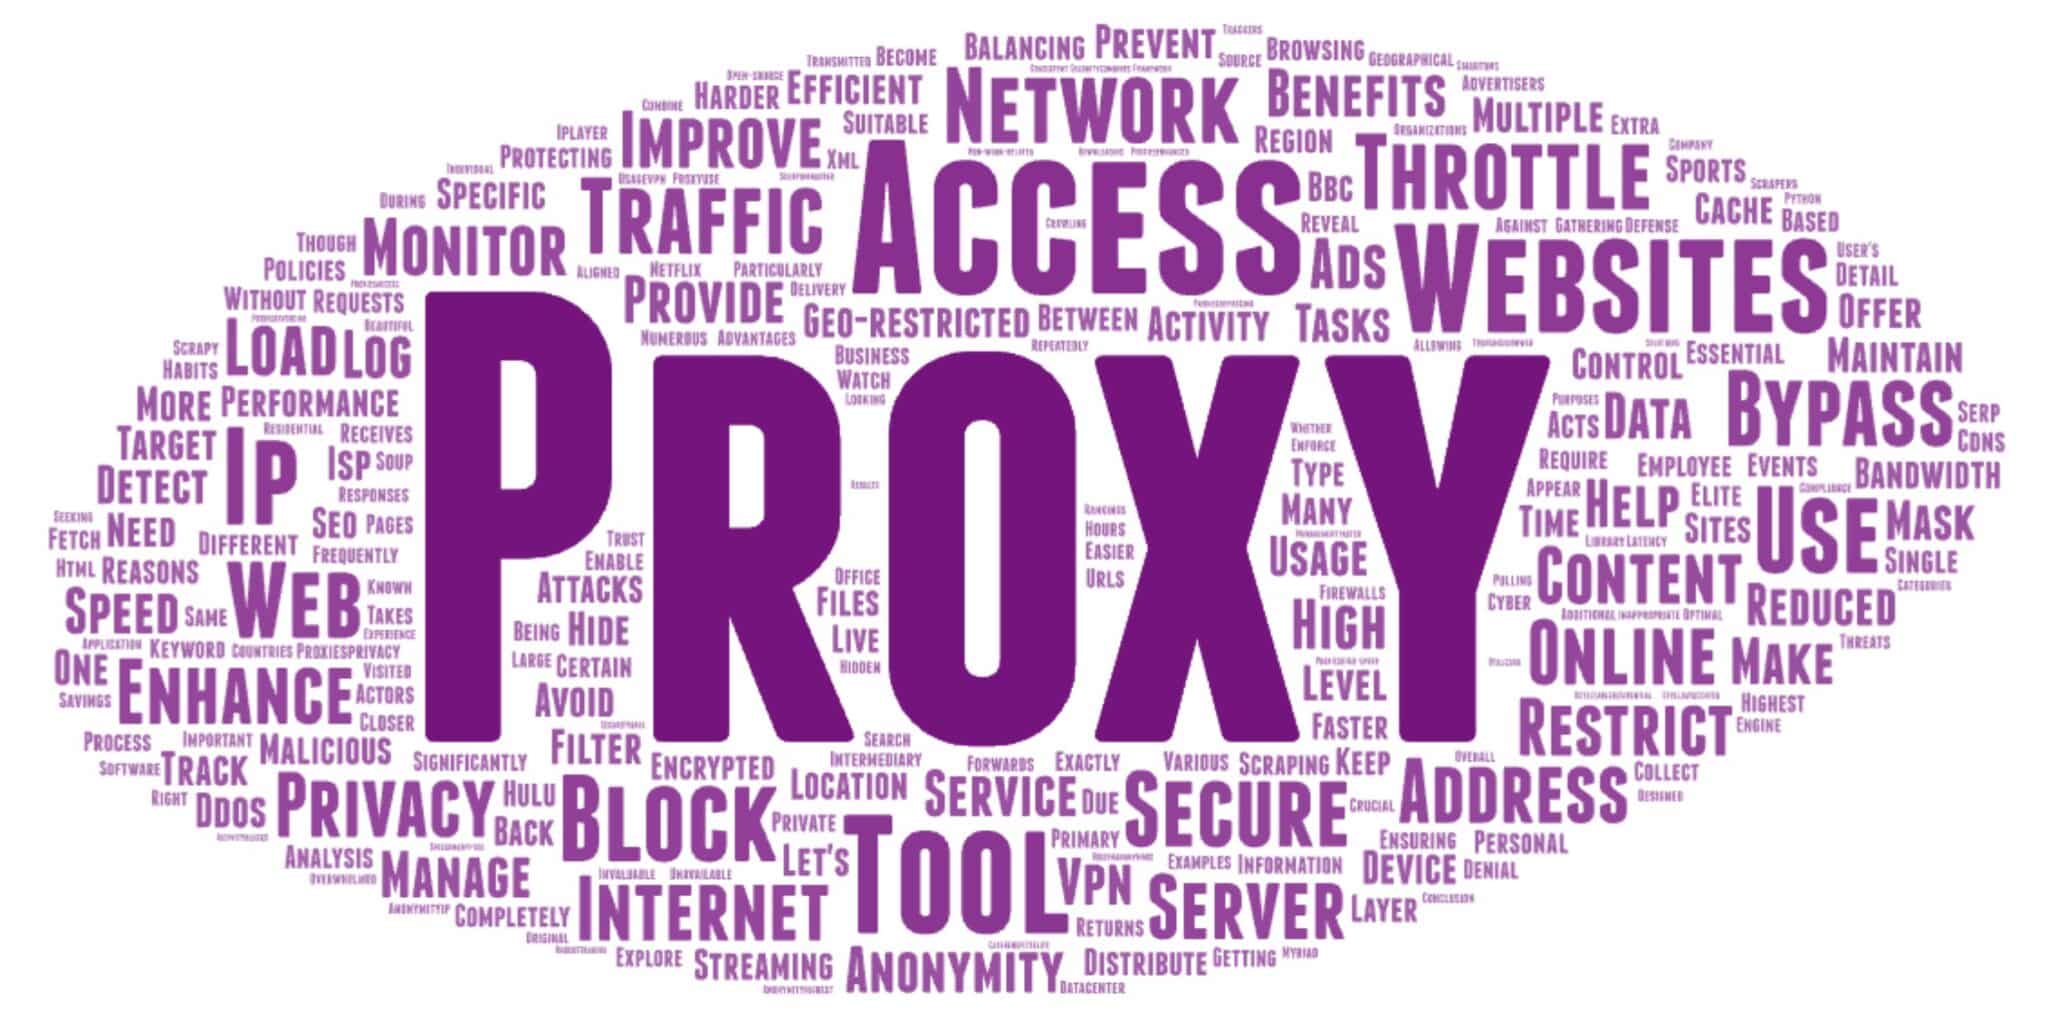 Why Do I Need a Proxy?